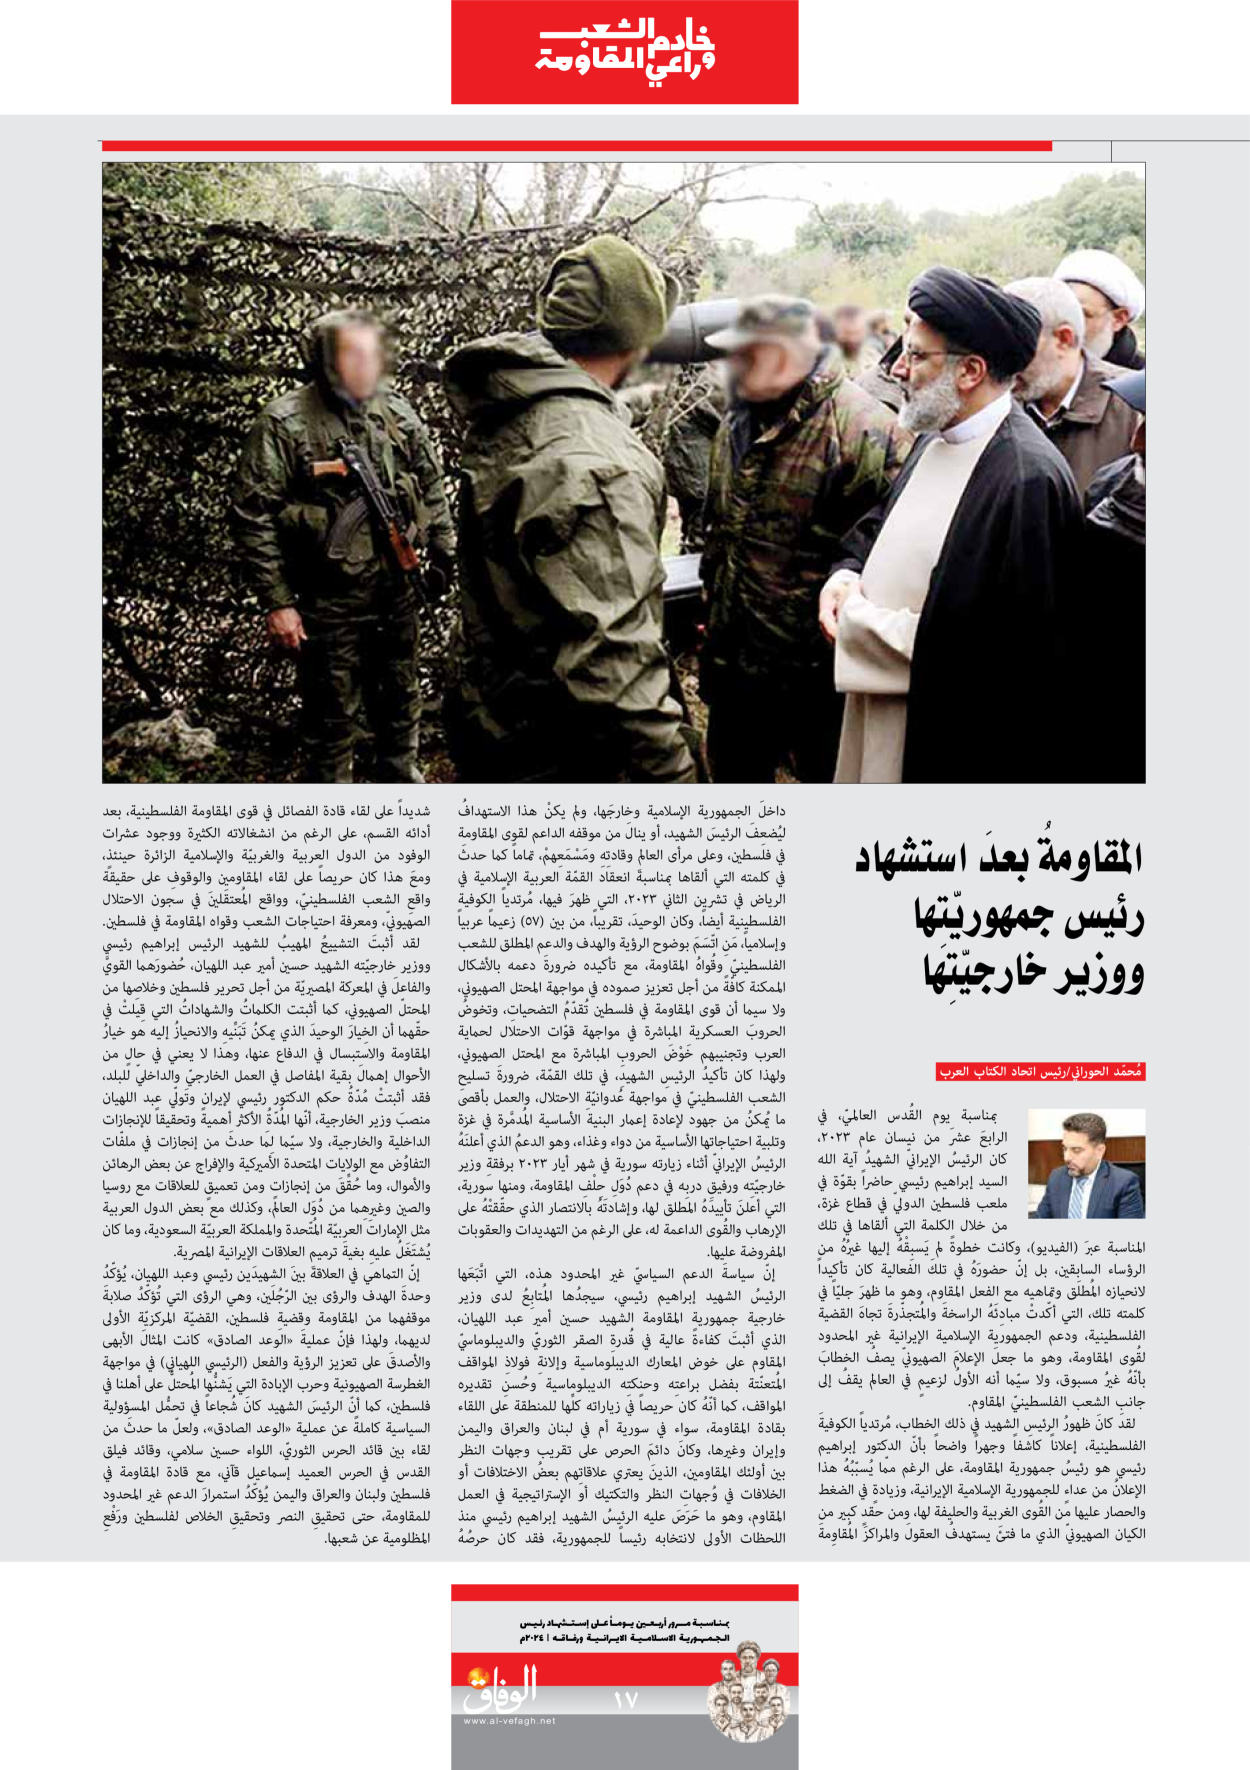 صحیفة ایران الدولیة الوفاق - ملحق ویژه نامه چهلم شهید رییسی - ٢٩ يونيو ٢٠٢٤ - الصفحة ۱۷